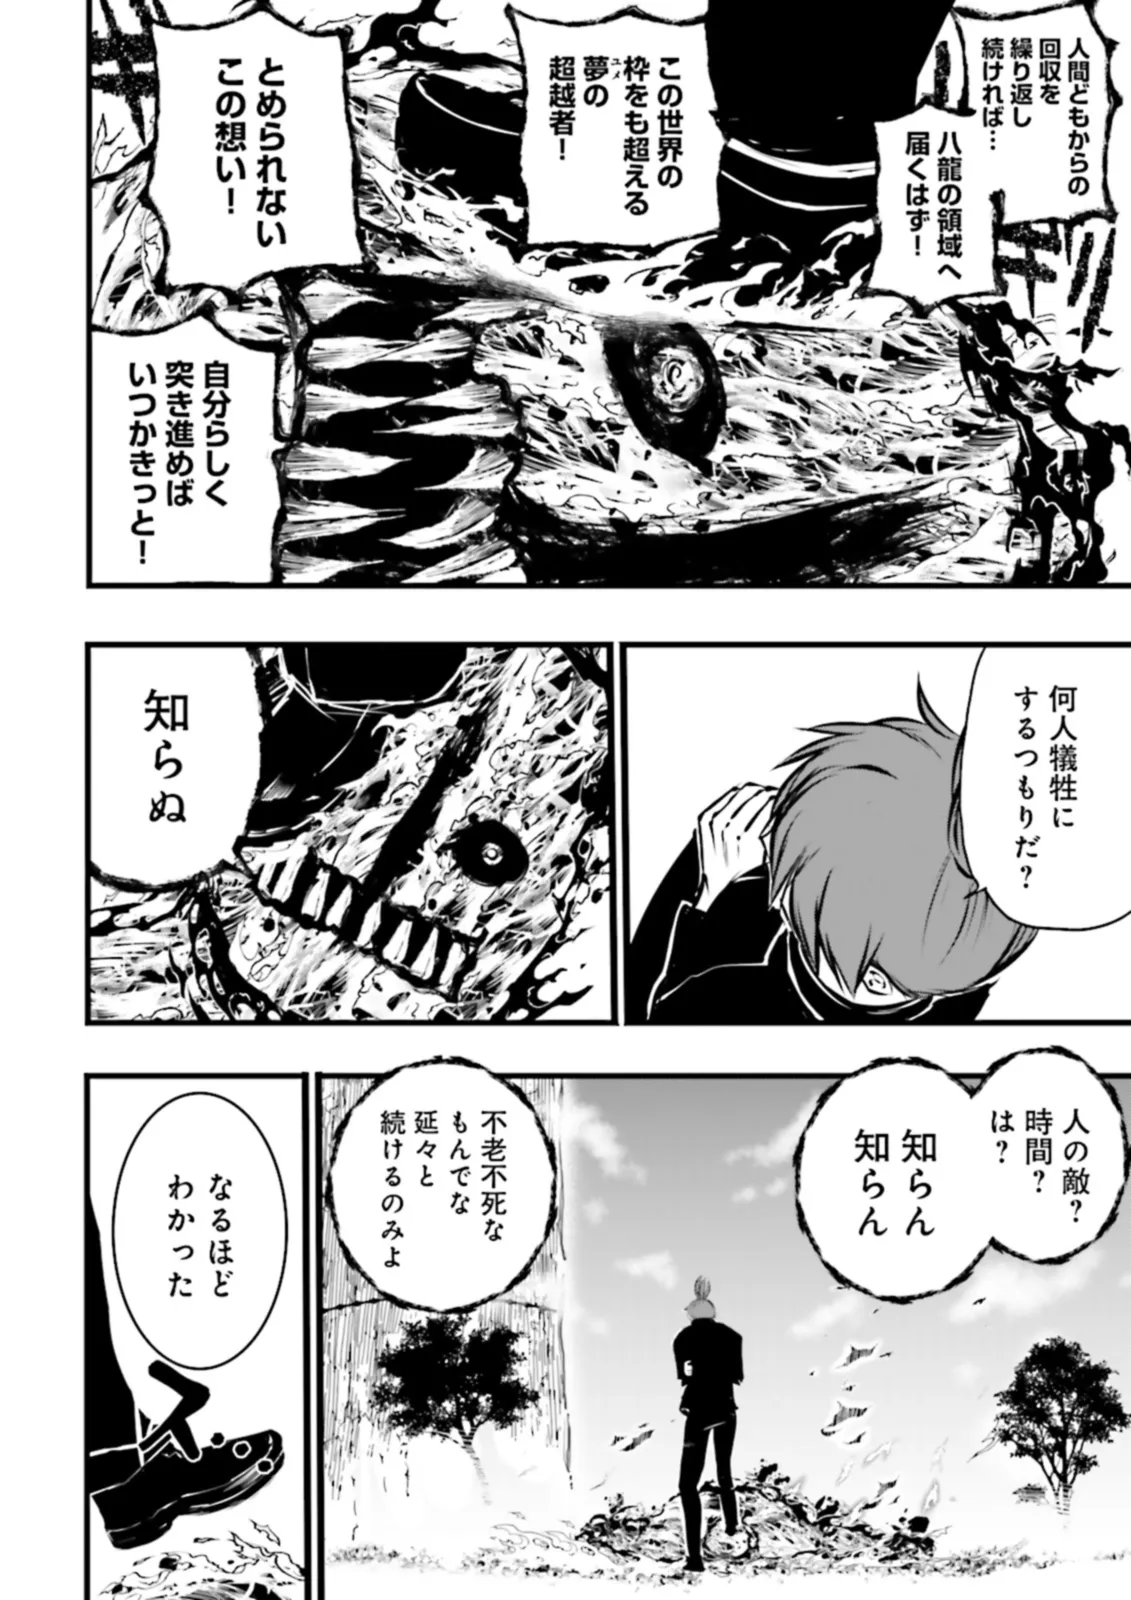 Sukiru Ga Nakereba Level wo Ageru ~ 99 Ga Kansuto No Sekai De Reberu 800 Man Kara Sutato ~ - Chapter 36.2 - Page 10